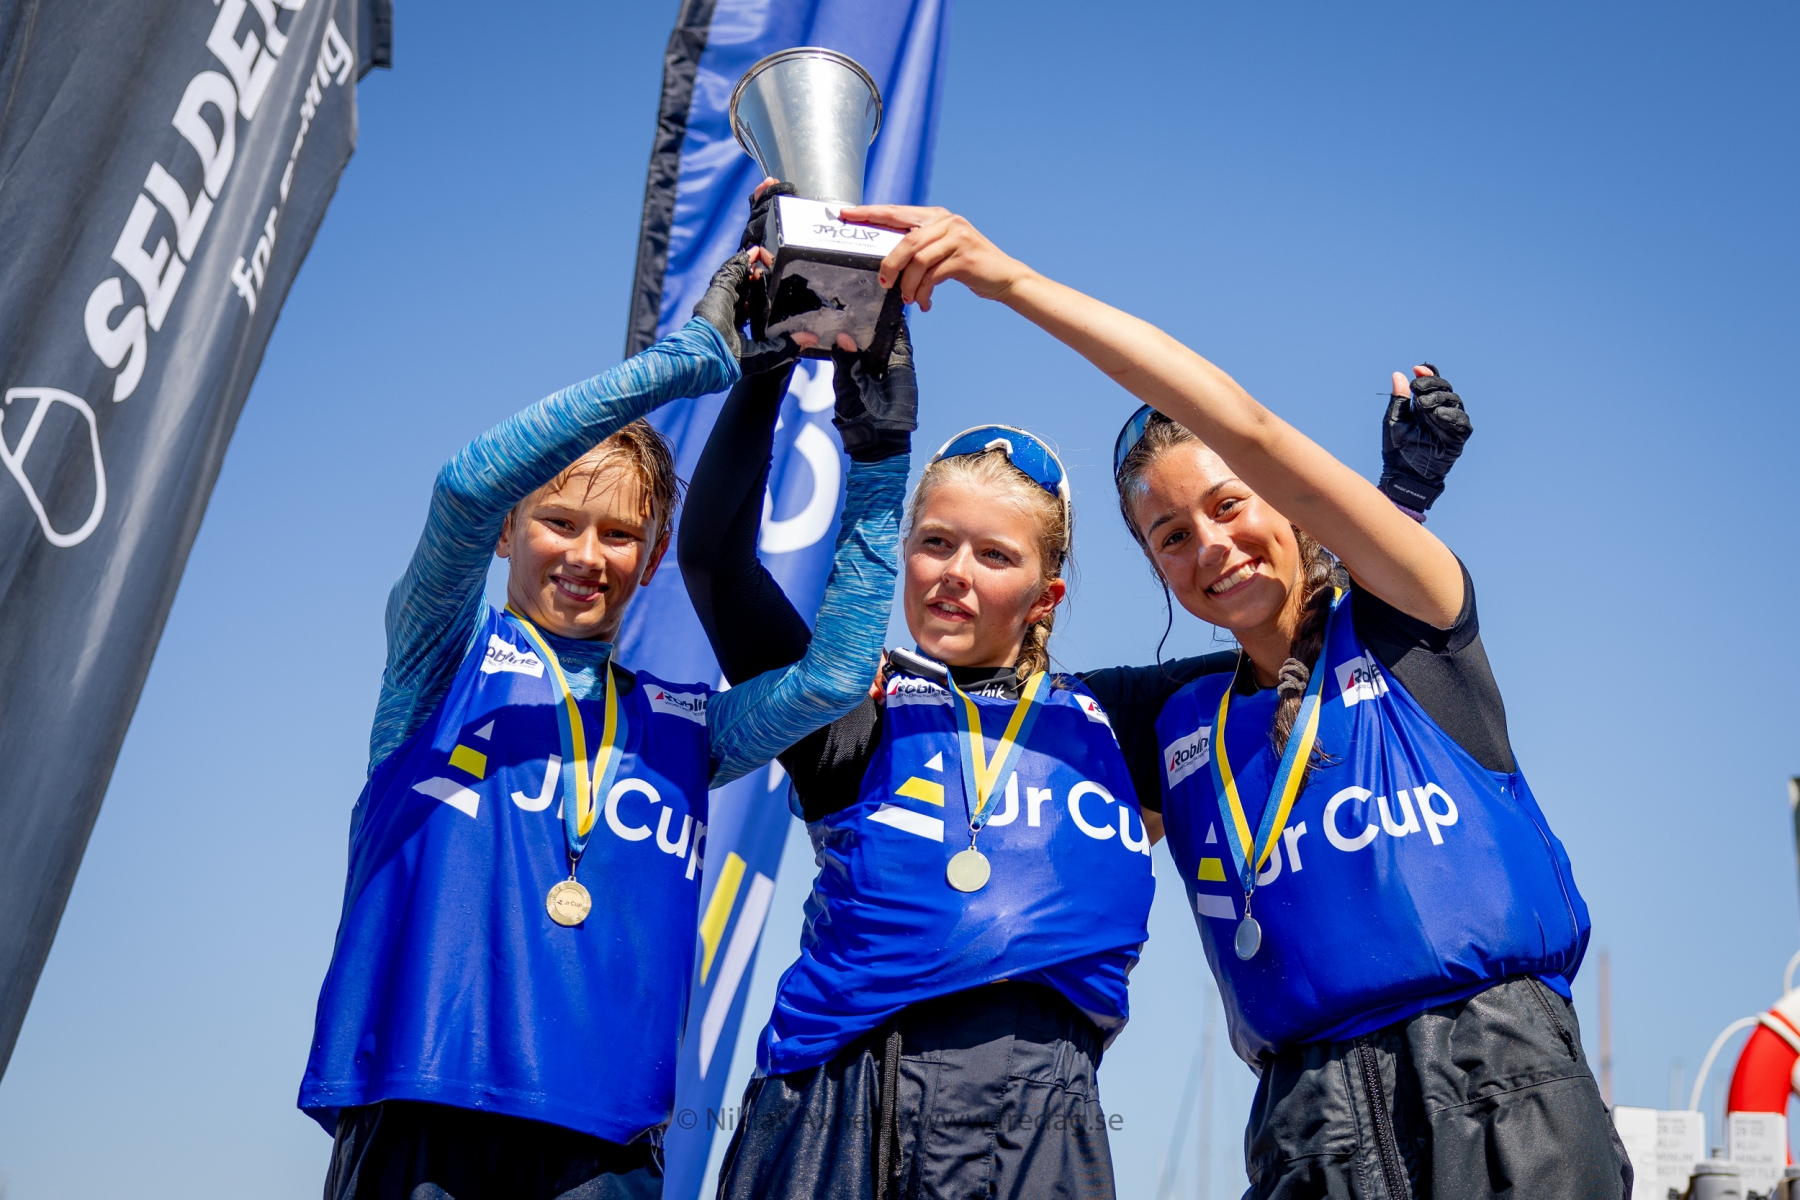 image: Lisa, Mischa och Svante från OXSS vinnare av Jr Cup 2023